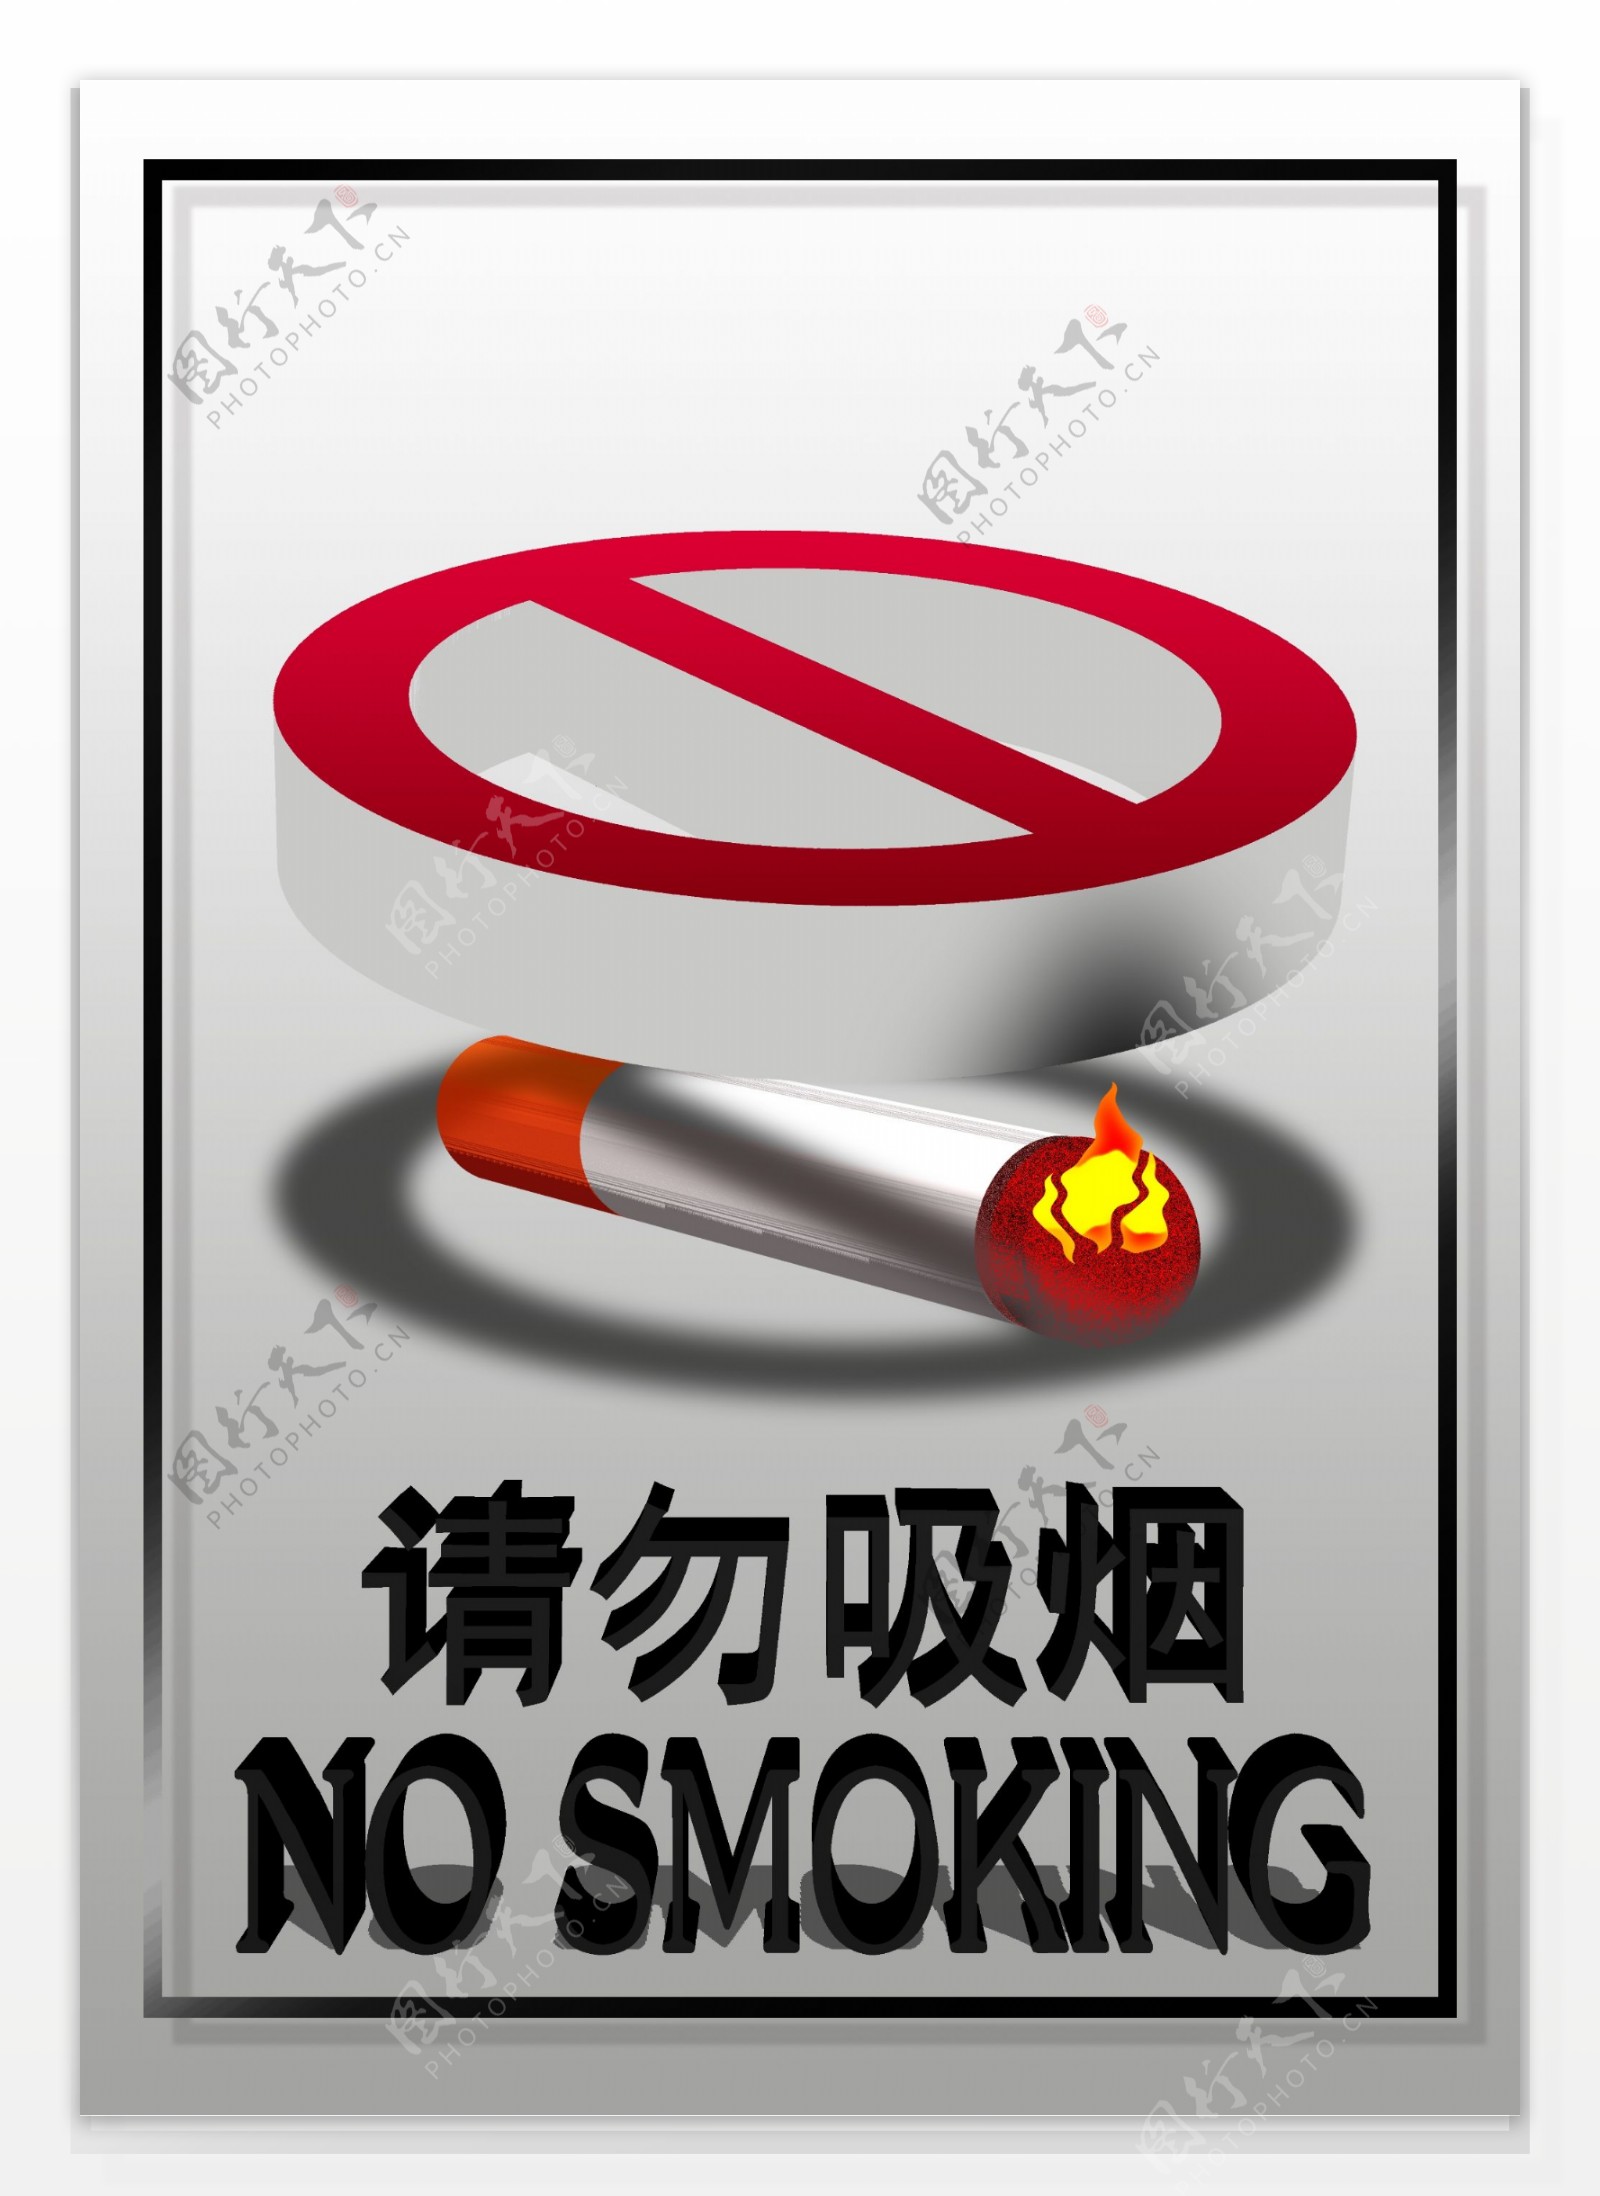 请勿吸烟明示牌